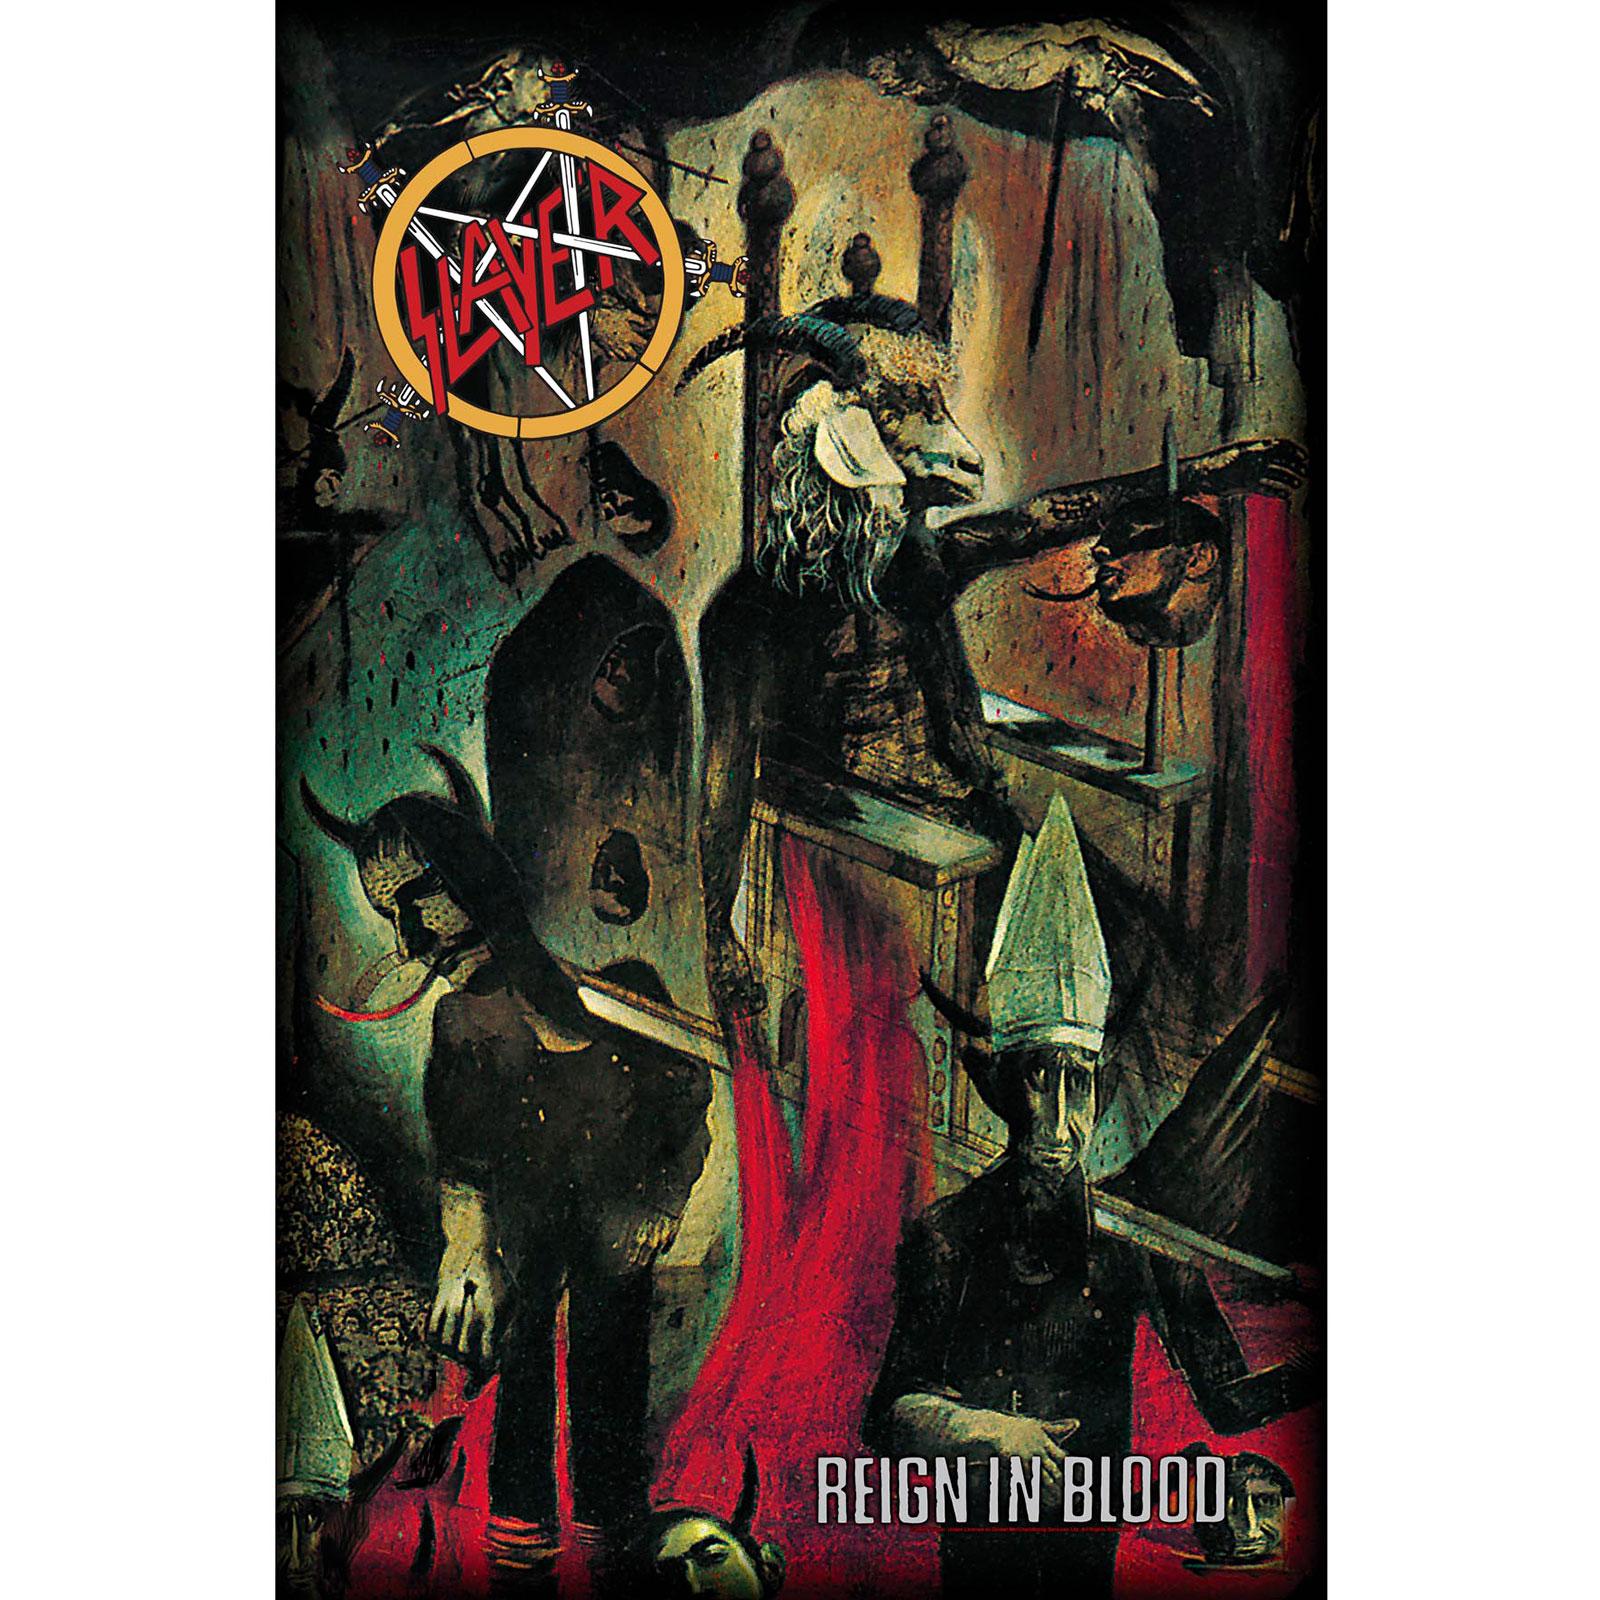 (スレイヤー) Slayer オフィシャル商品 Reign In Blood テキスタイルポスター ポリエステル 布製 ポスター 【海外通販】